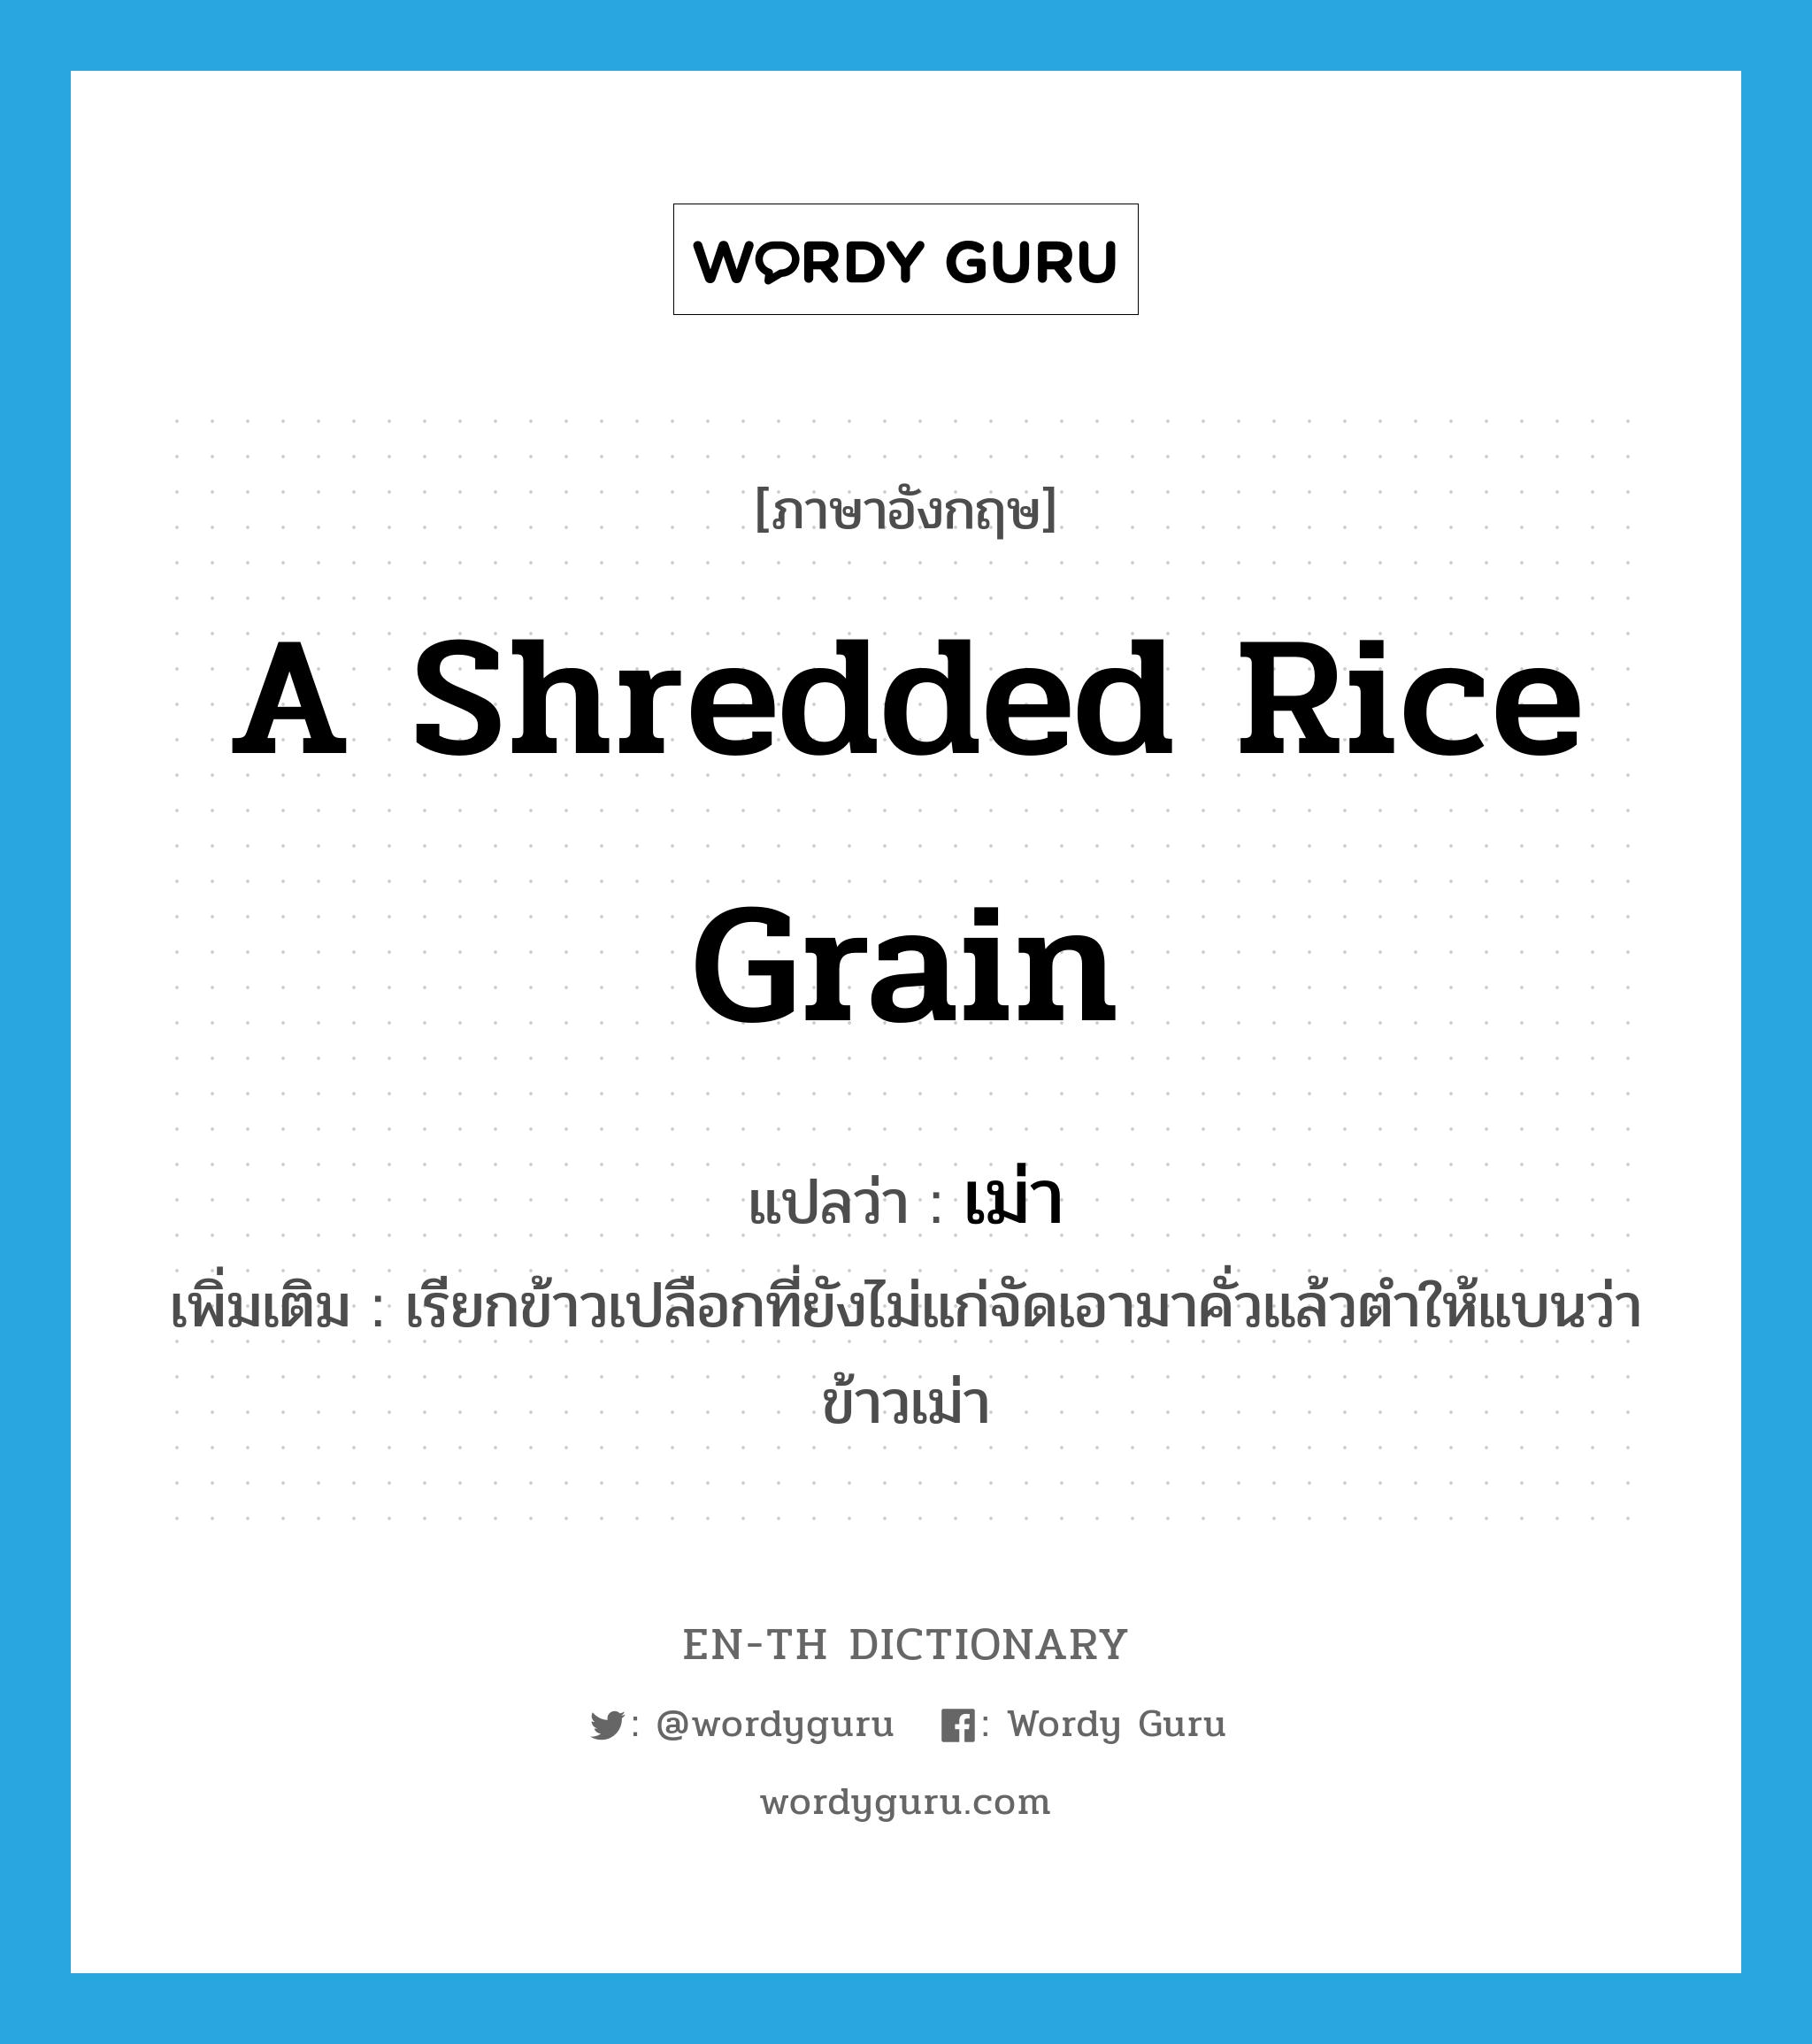 เม่า ภาษาอังกฤษ?, คำศัพท์ภาษาอังกฤษ เม่า แปลว่า a shredded rice grain ประเภท N เพิ่มเติม เรียกข้าวเปลือกที่ยังไม่แก่จัดเอามาคั่วแล้วตำให้แบนว่า ข้าวเม่า หมวด N